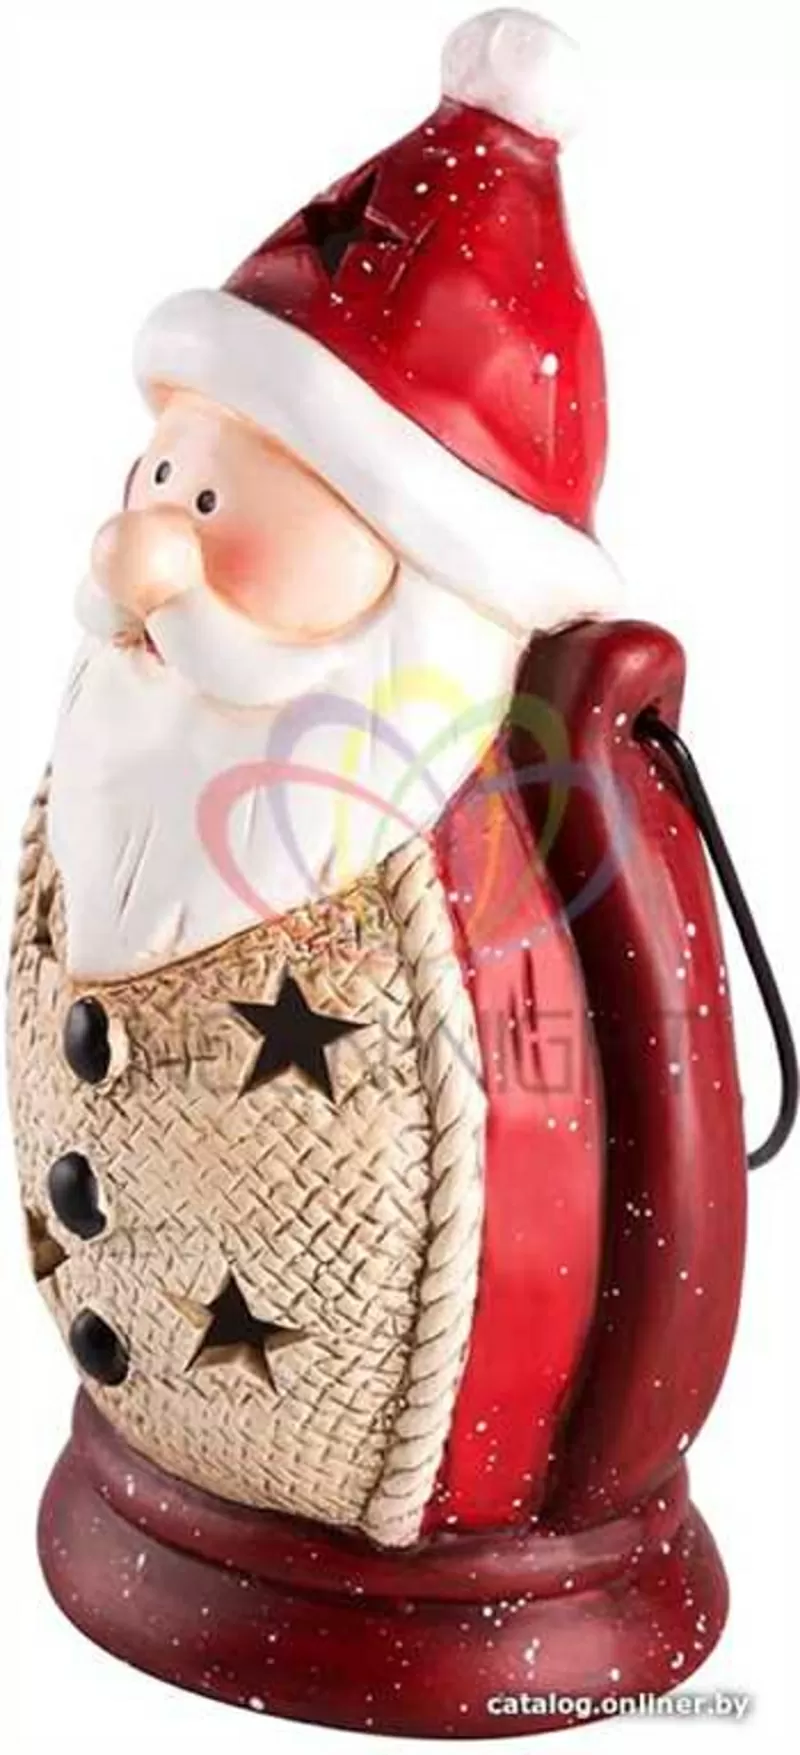 Керамическая фигурка Дед Мороз 11-8-20 см 3